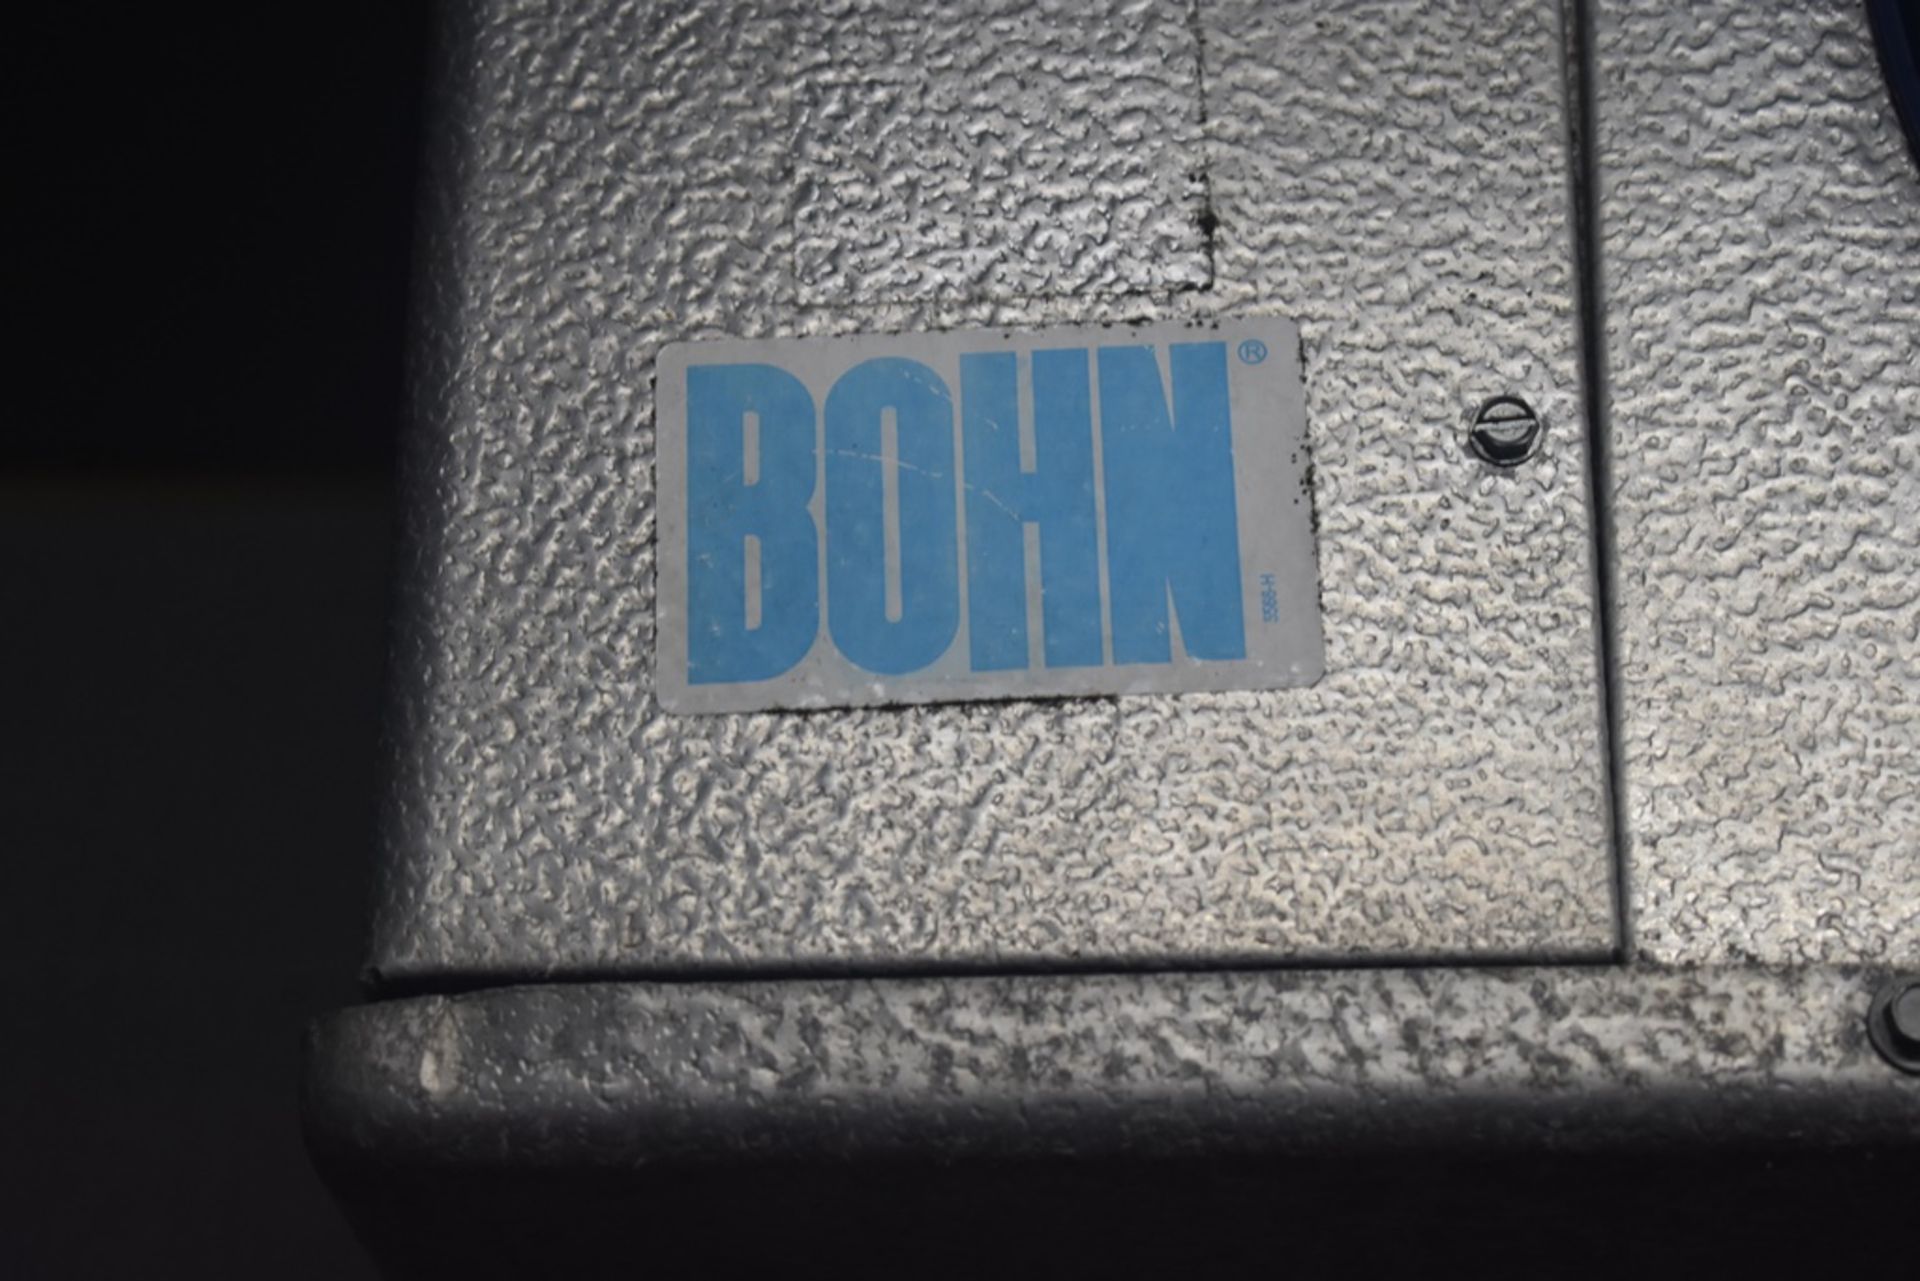 Cámara de congelación medidas 2.50 x 2.54 x 2.20 m, incluye difusor de dos ventiladores marca Bohn, - Image 13 of 31